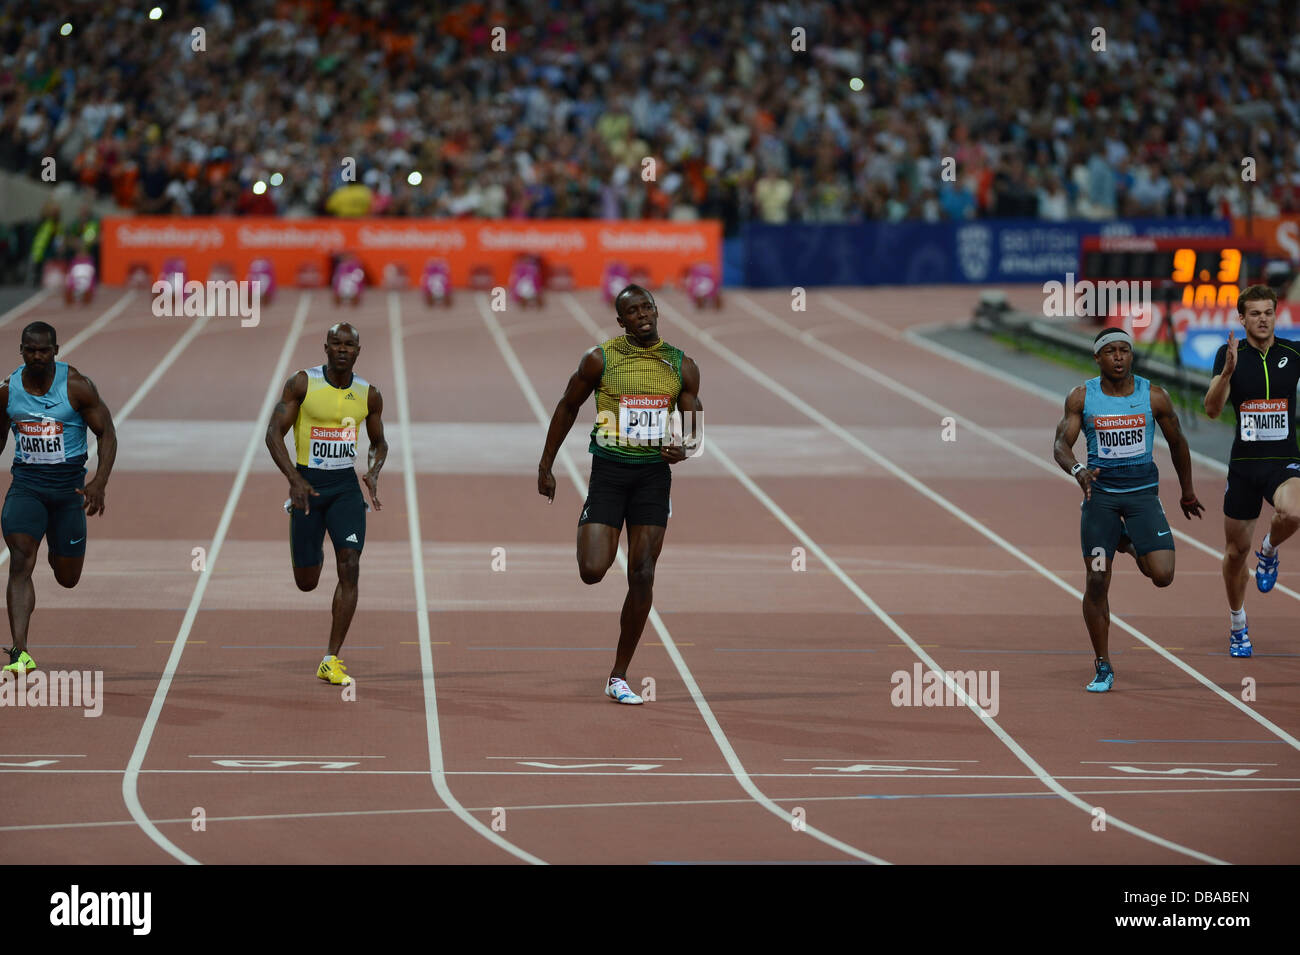 London, UK. 26. Juli 2013. Usain Bolt Rennen zum Sieg bei den Herren 100m in einer Saison Bestzeit von 9,85 Sekunden bei London Jubiläum Spiele Diamond League Leichtathletik meeting, 26. Juli 2013 Credit: Martin Bateman/Alamy Live News Stockfoto